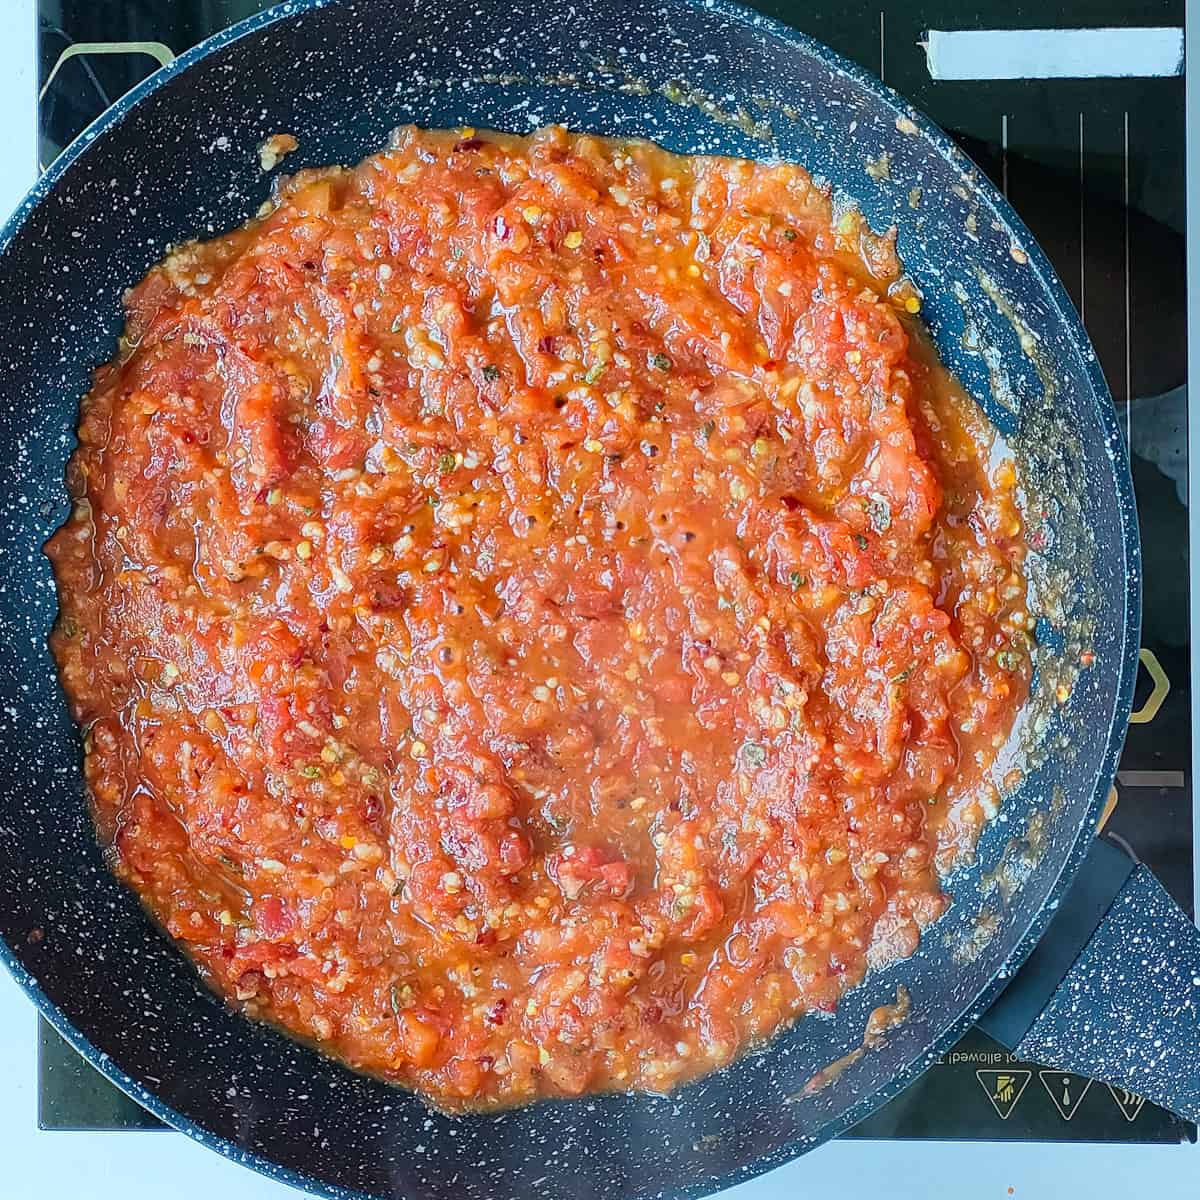 Spicy spaghetti sauce in a non-stick pan.